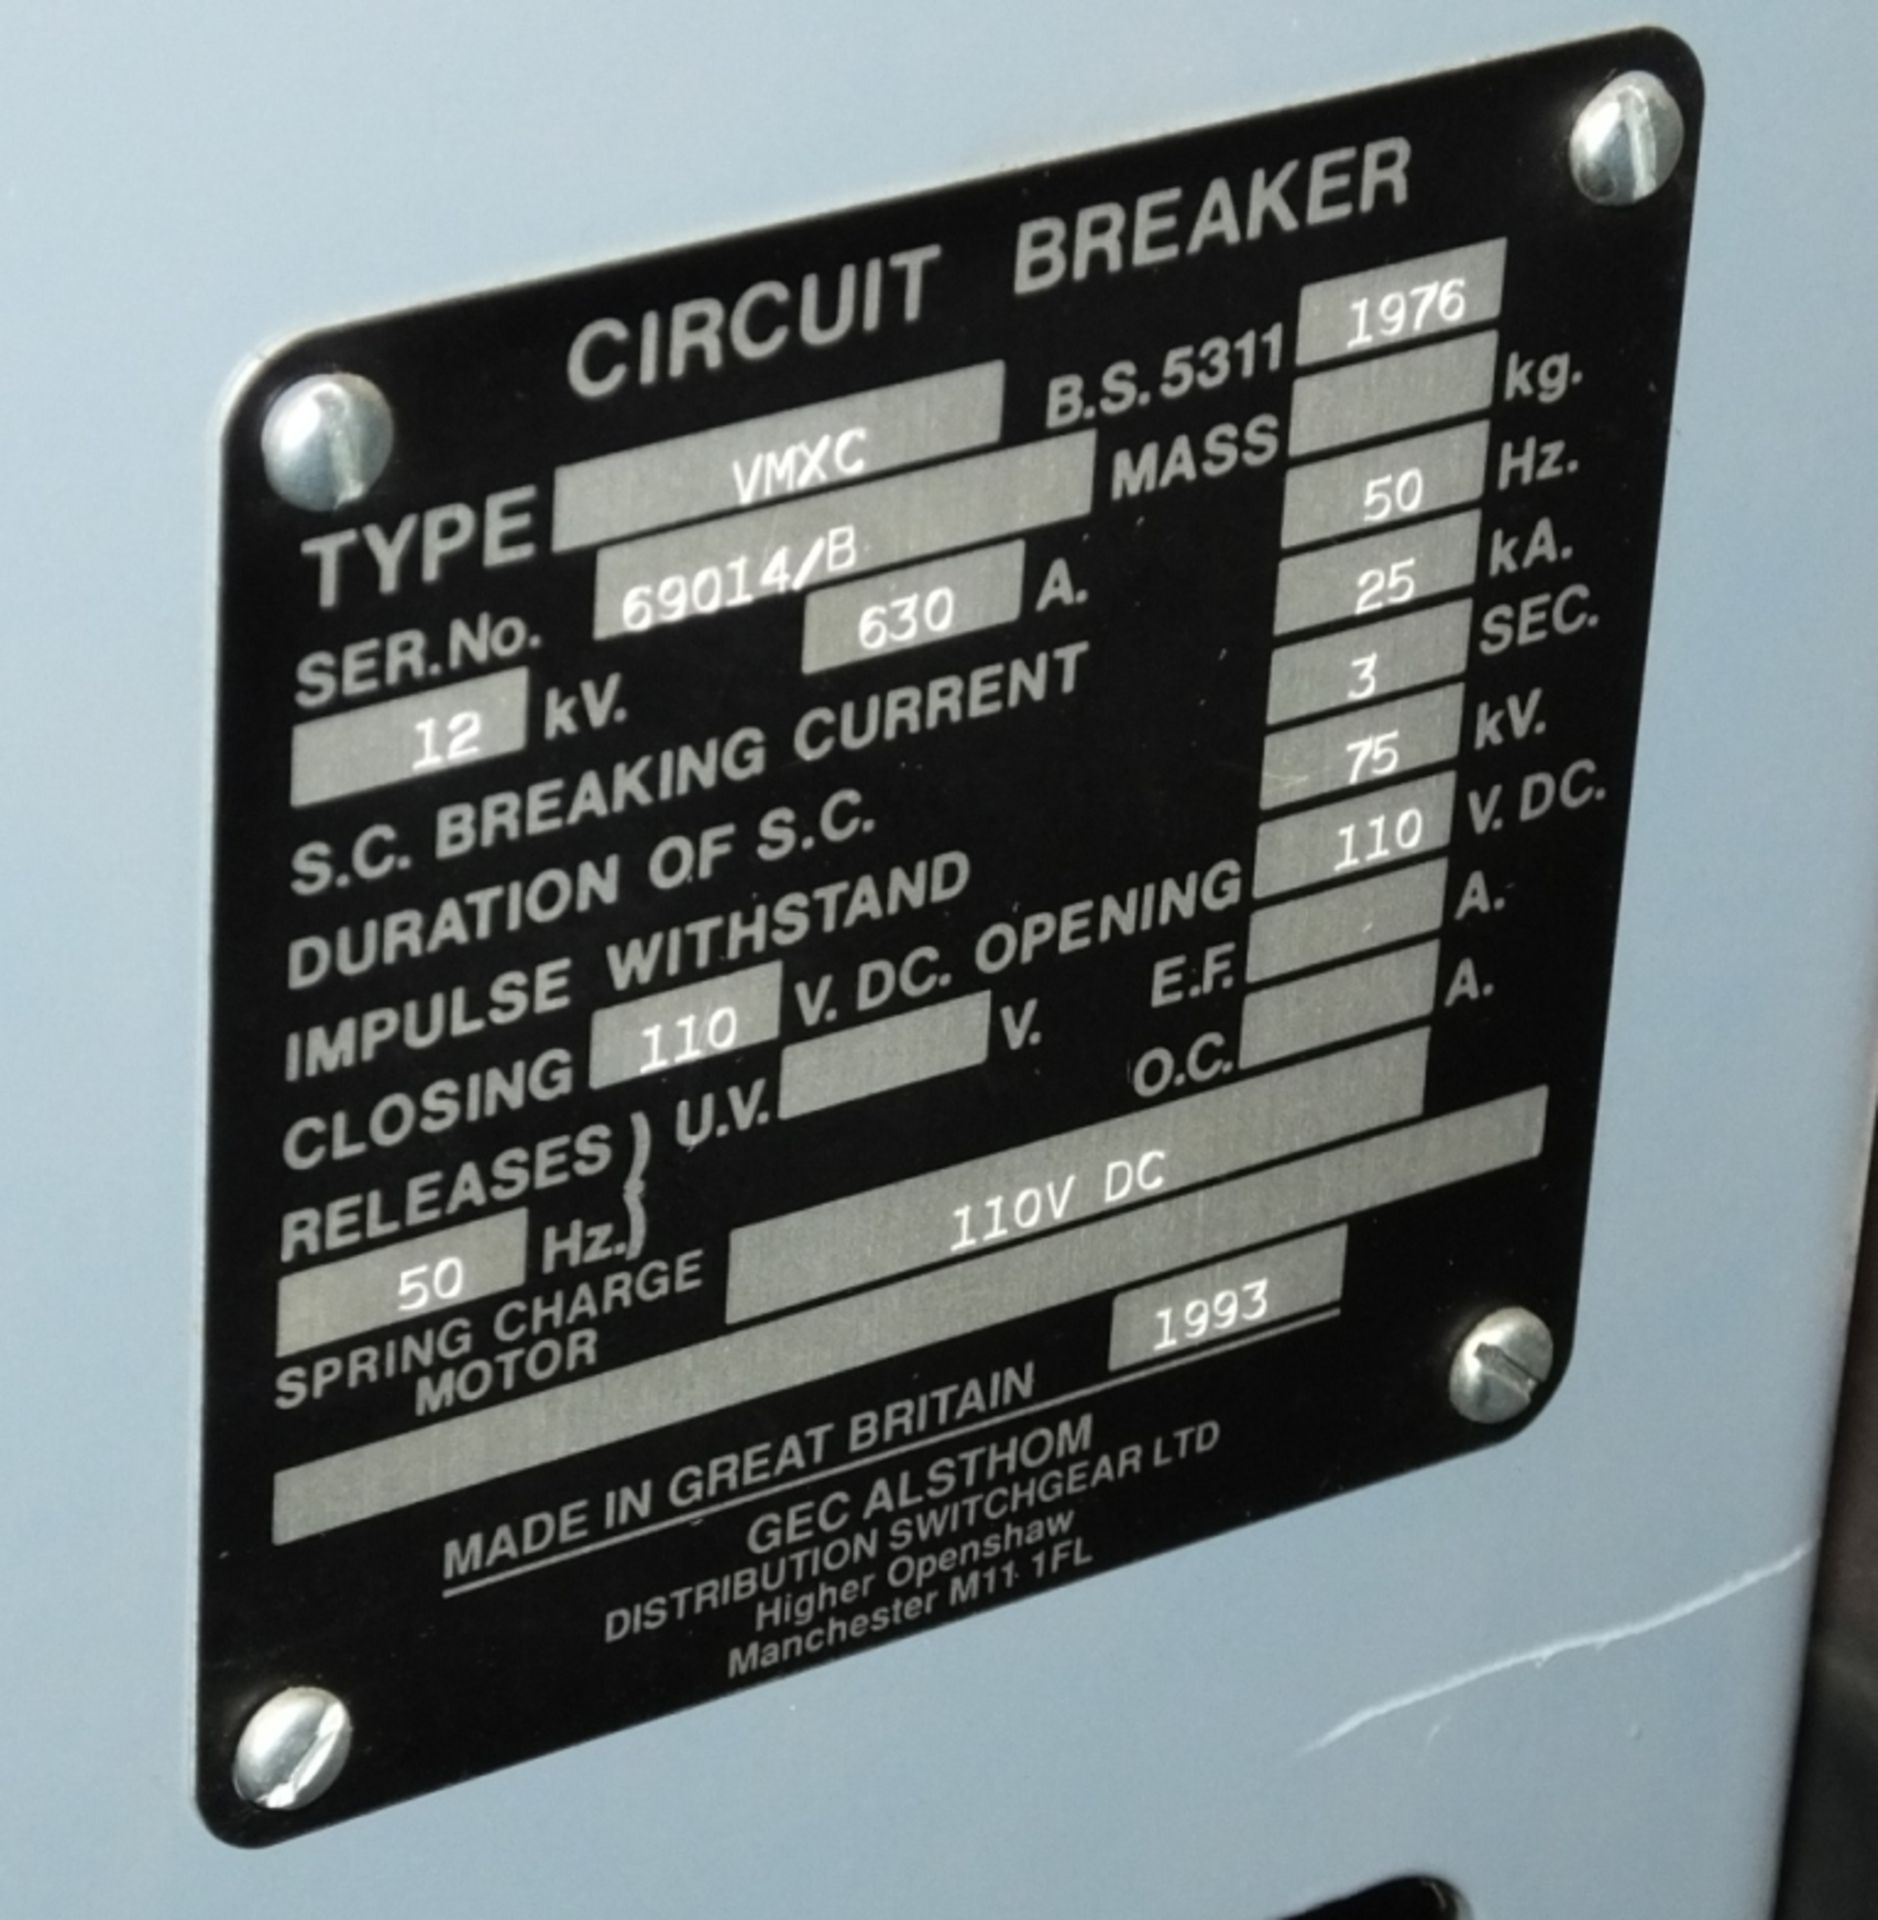 Gec Alstom- Circuit breakers 630 amps. - Image 4 of 4